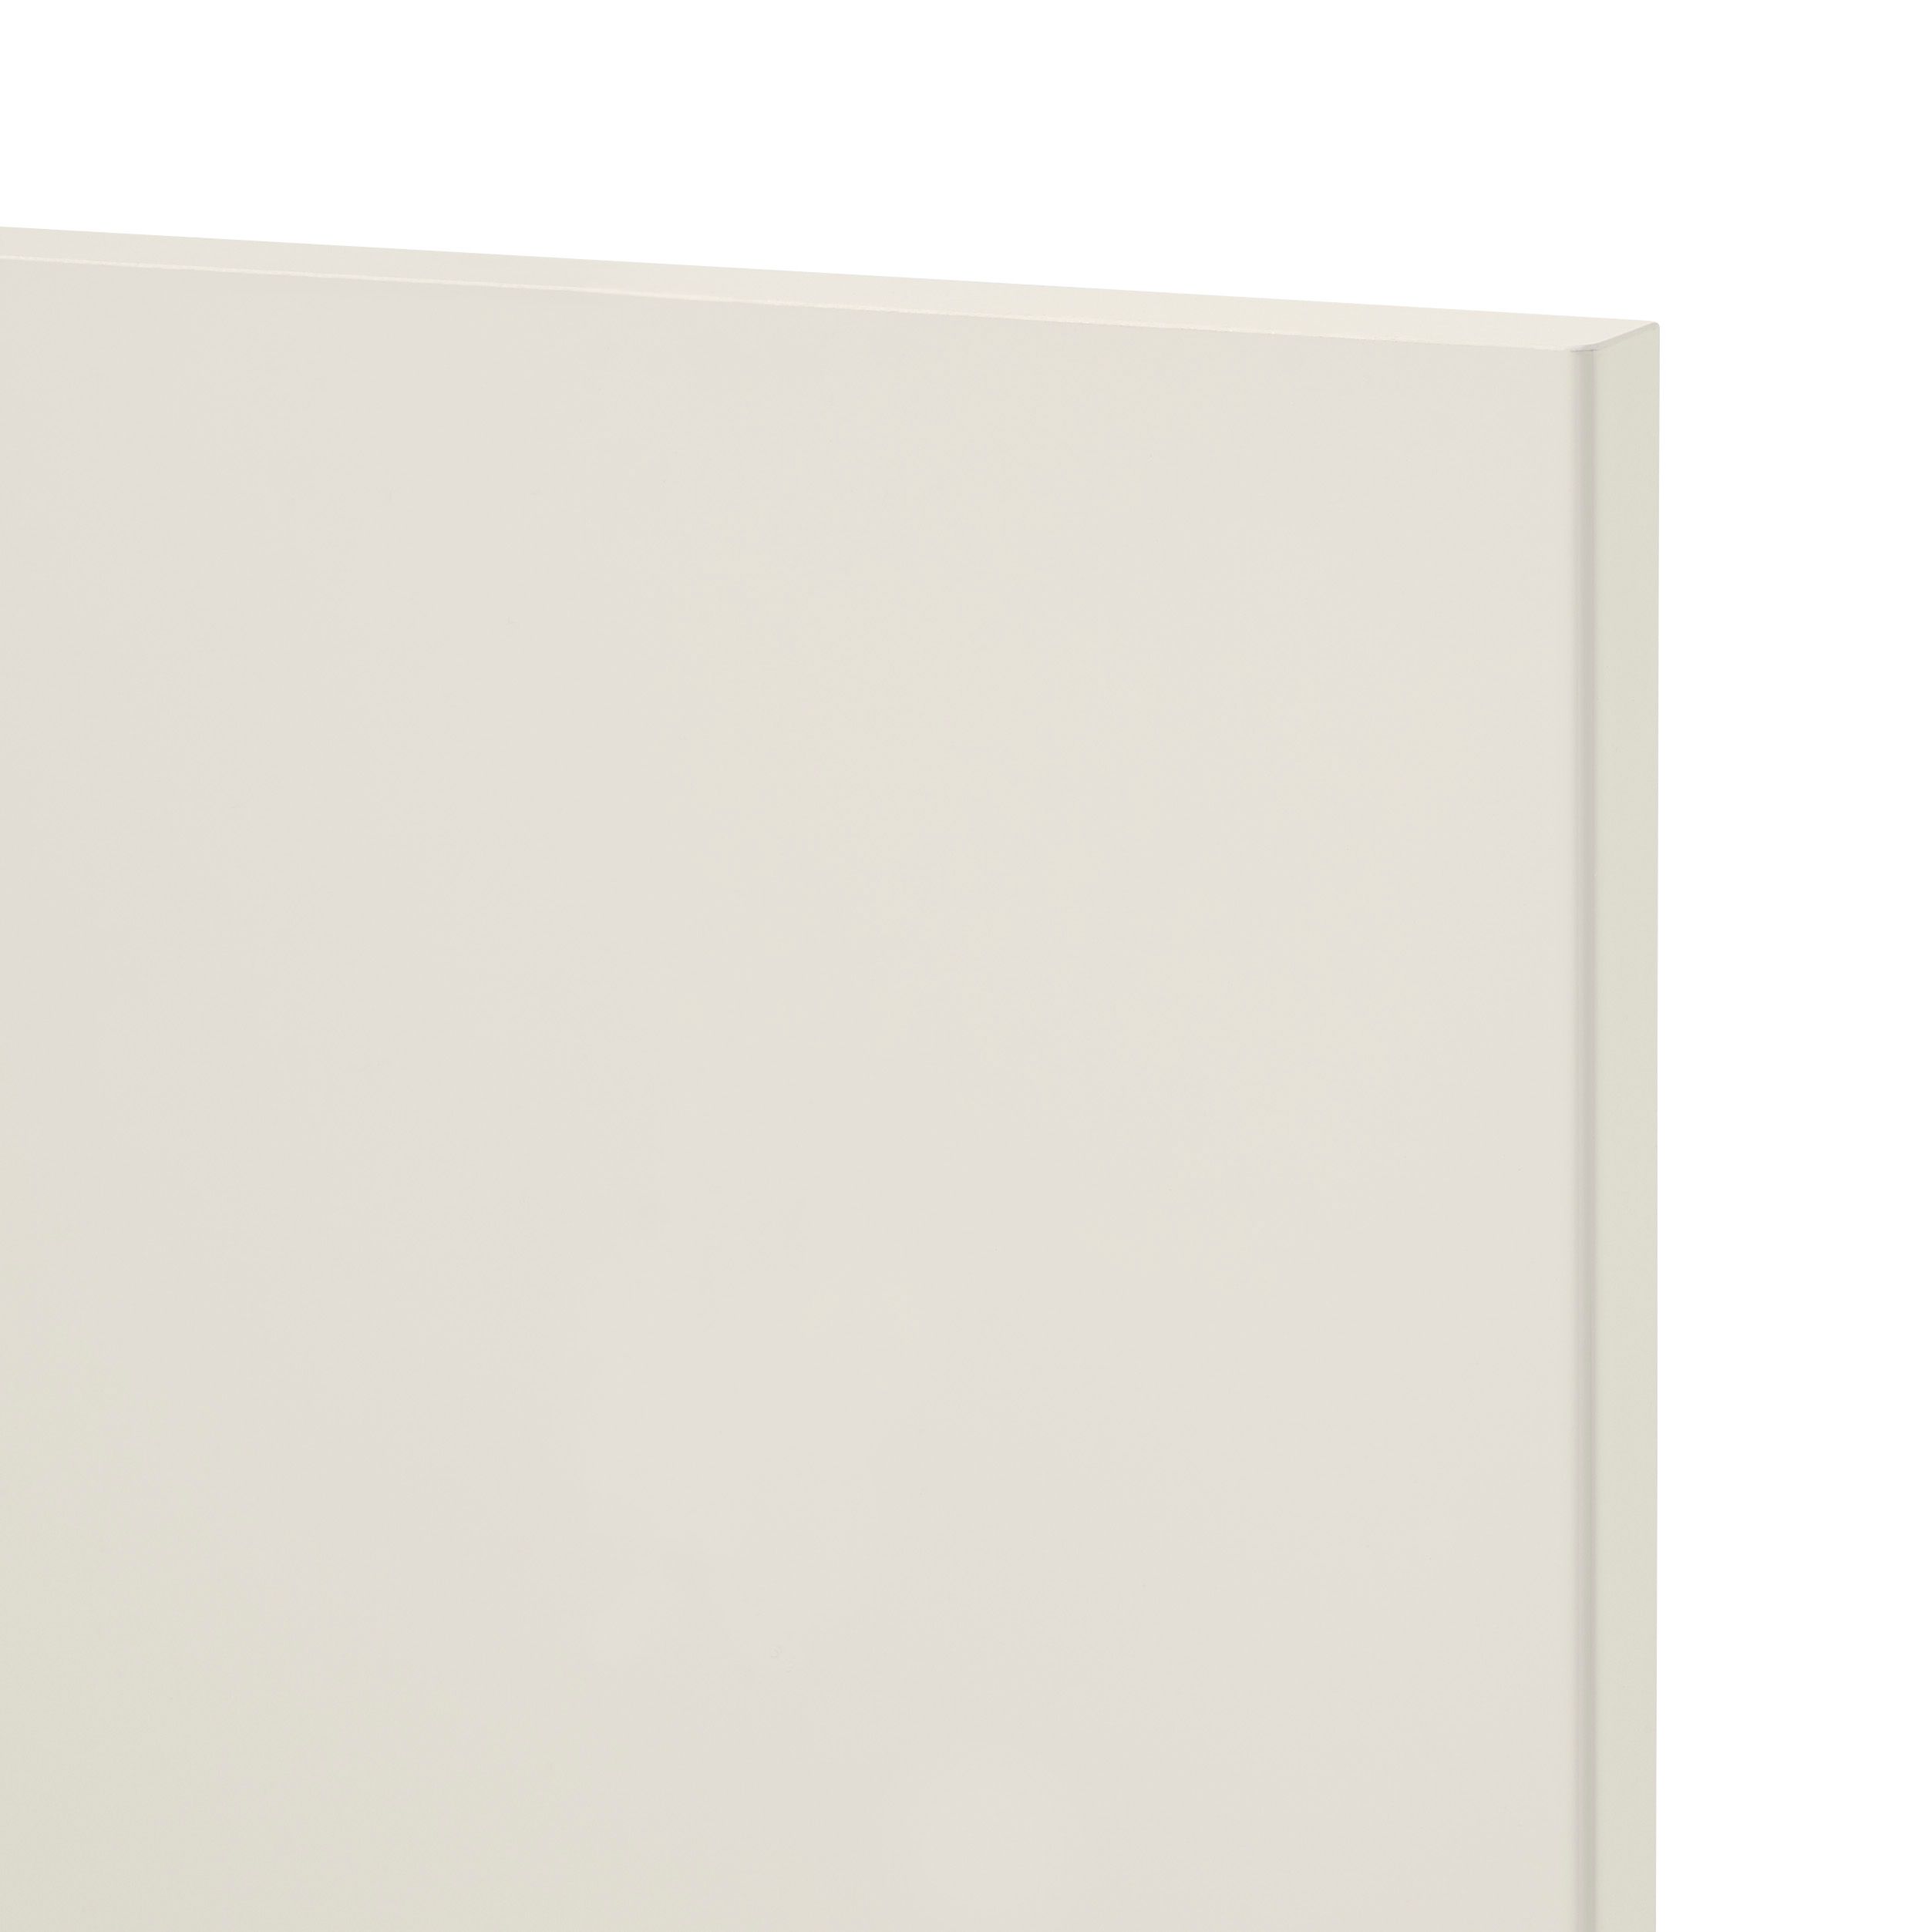 GoodHome Stevia Gloss cream slab Tall wall Cabinet door (W)150mm (H)895mm (T)18mm